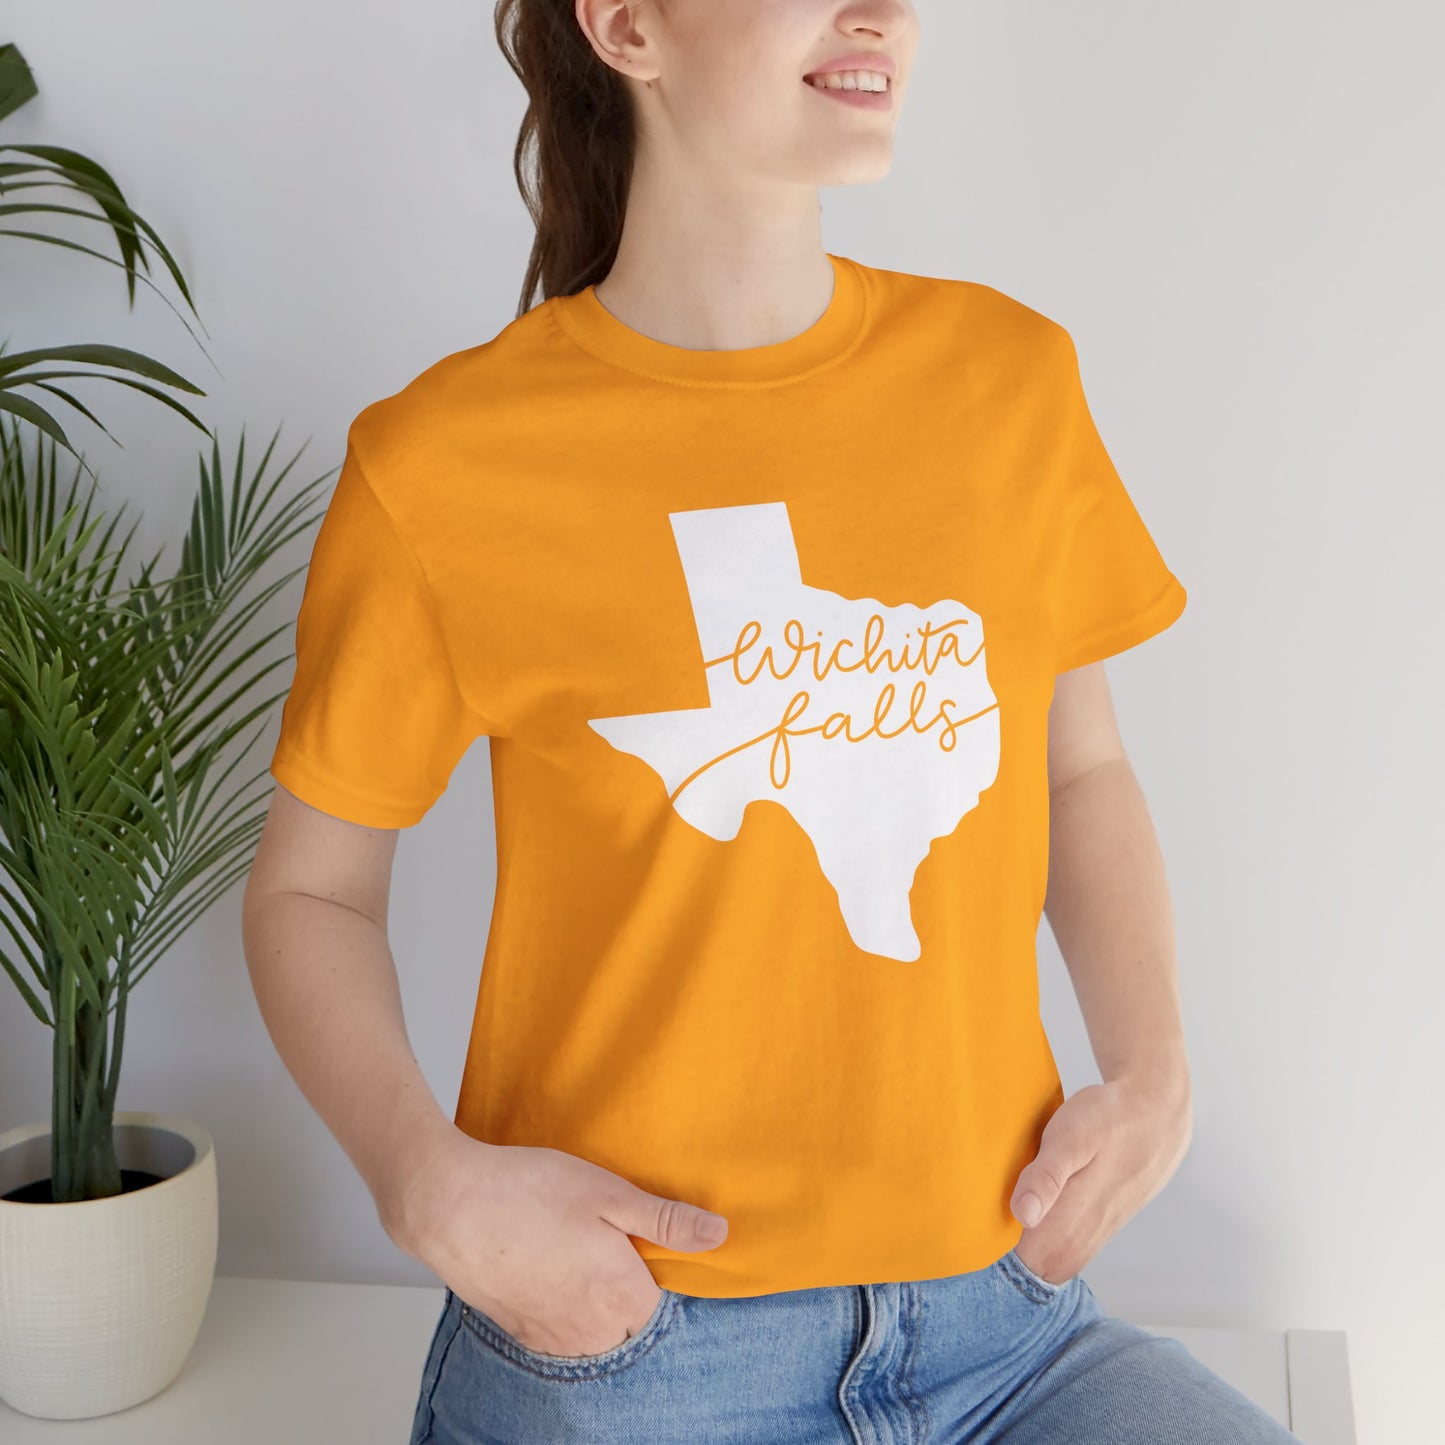 Camiseta unisex de Wichita Falls